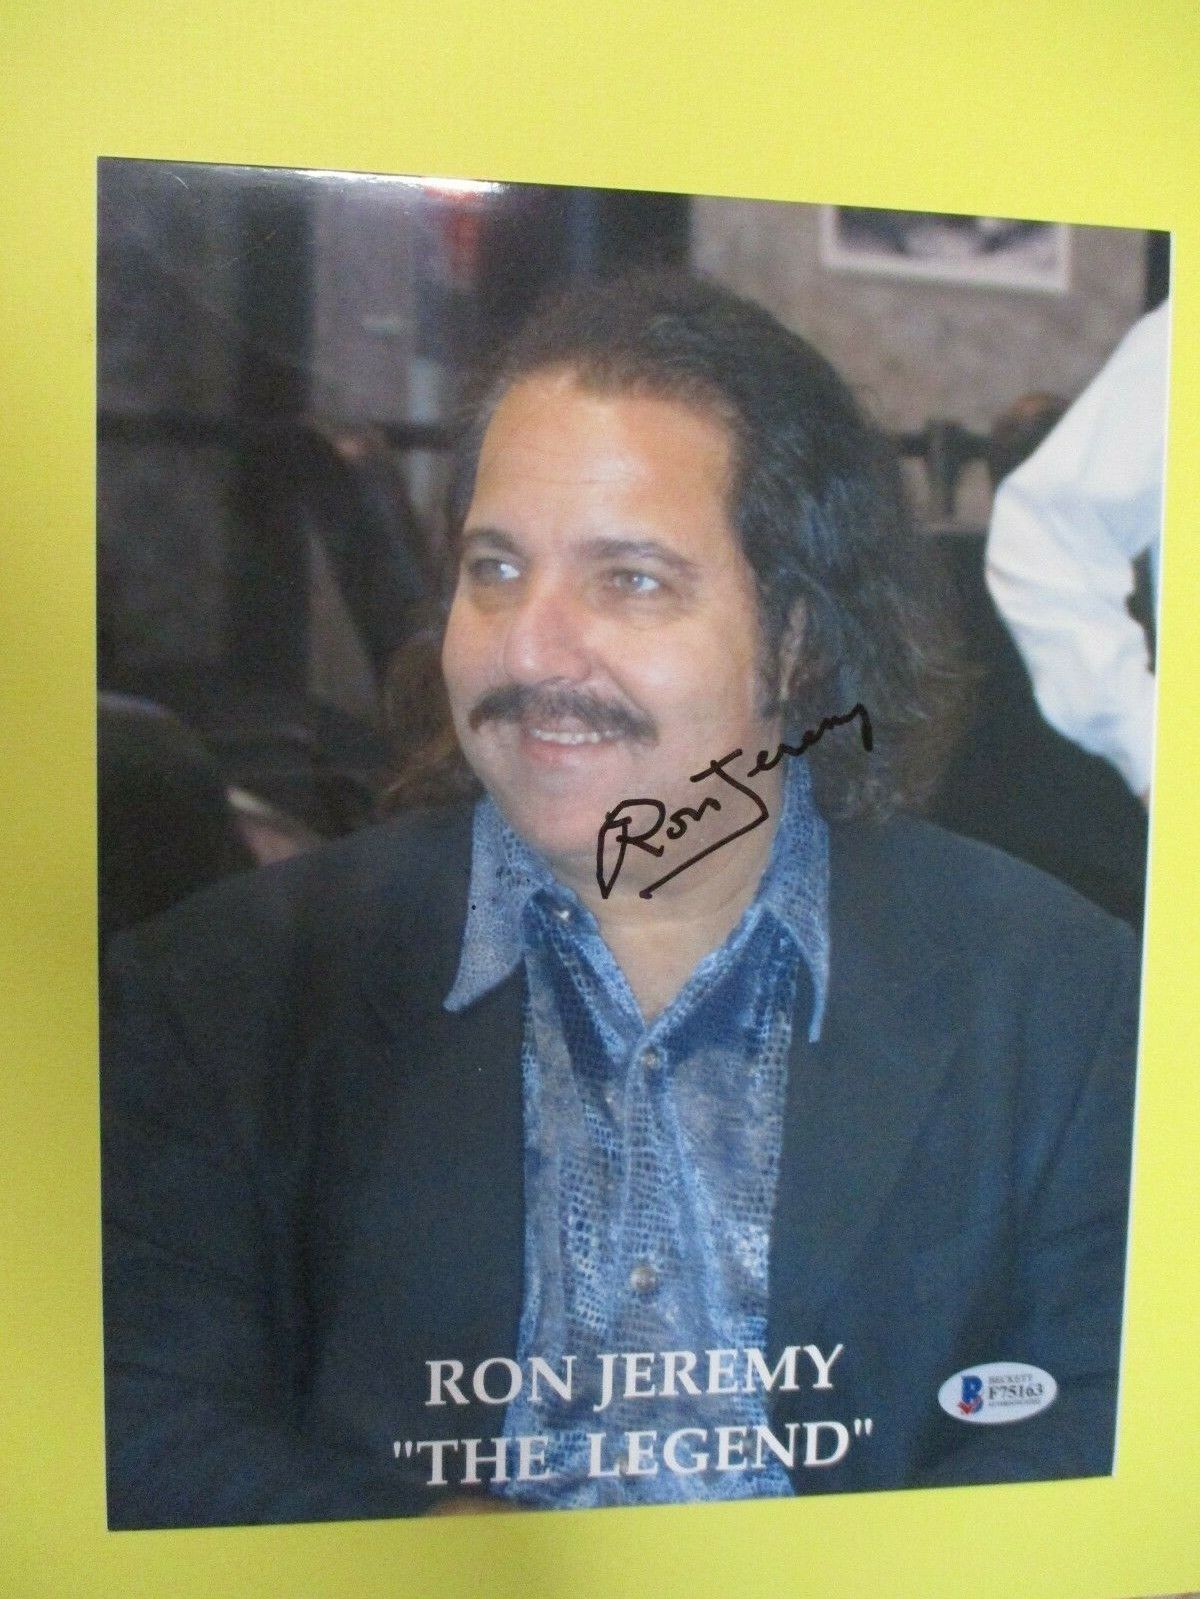 Ron Jeremy The Legend Porn Star Signed Autographed 8x10 Color Photo BAS